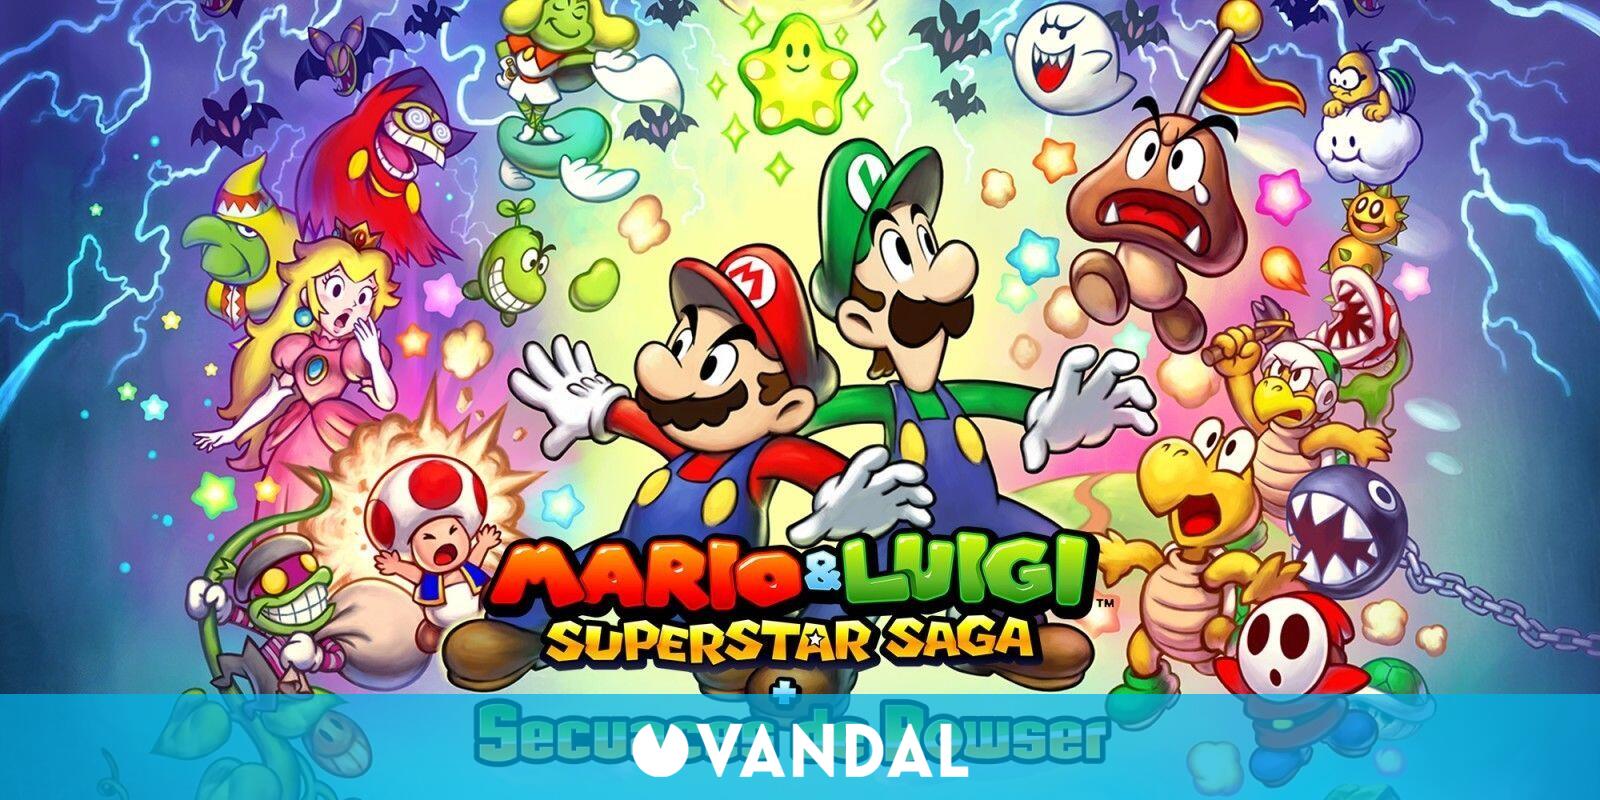 Interrupción Disparo lanza Mario & Luigi: Superstar Saga es el juego más vendido en Japón - Vandal